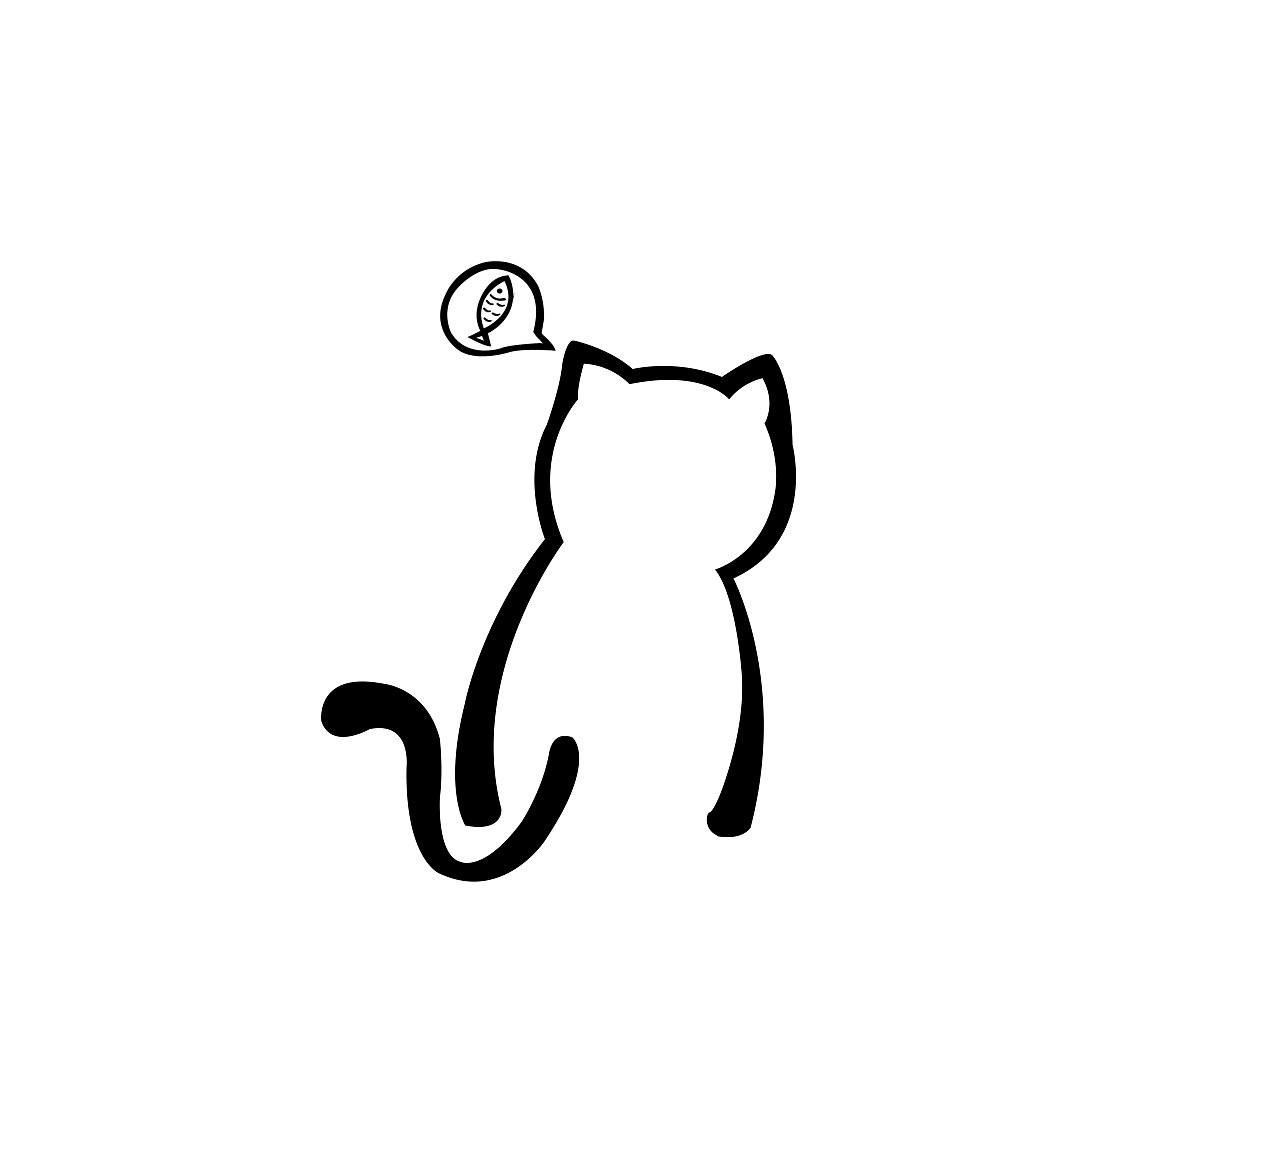 【插画矢量风】可爱猫猫-动物配景,矢量动物,PS素材-设计e周素材库